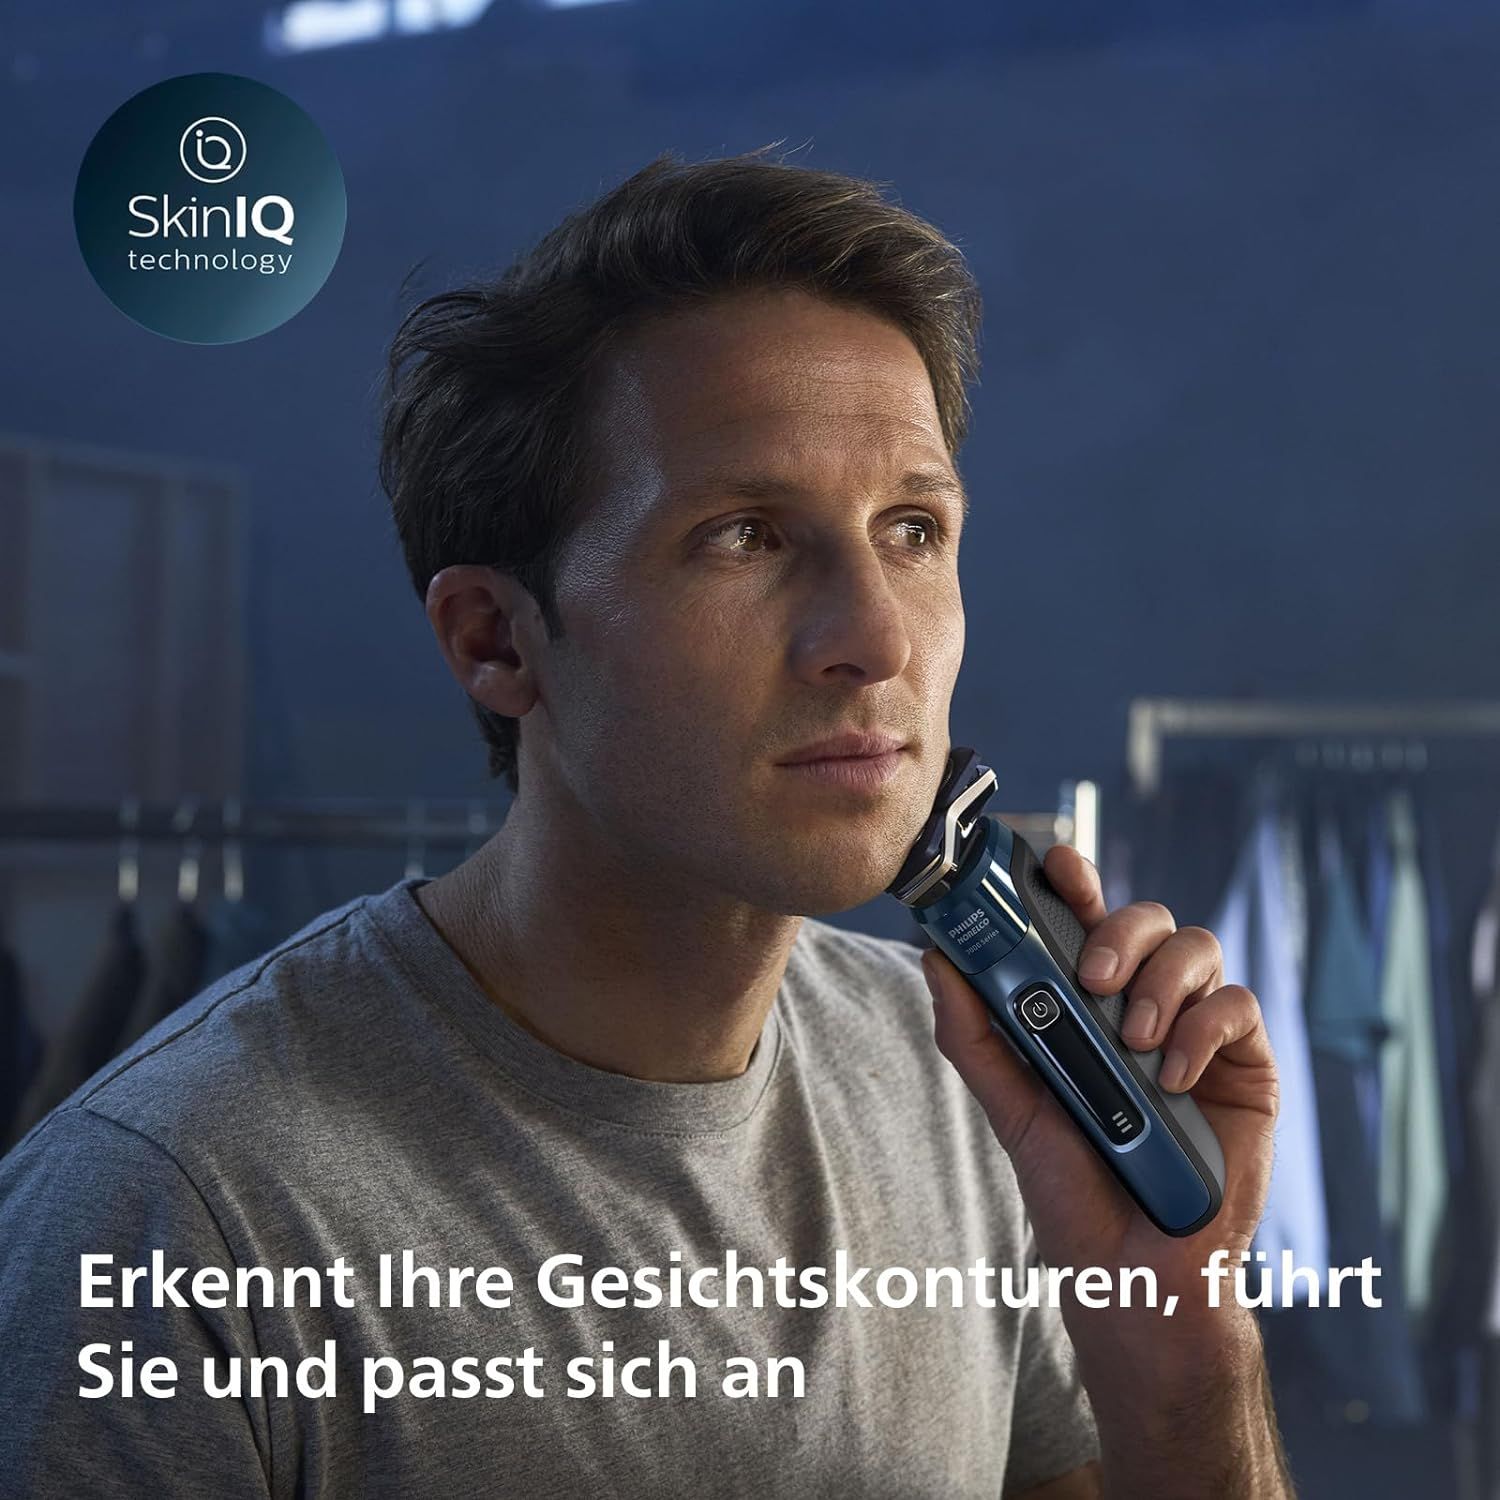 Philips Shaver Series 7000 – Elektrischer Nass- und Trockenrasierer für Herren